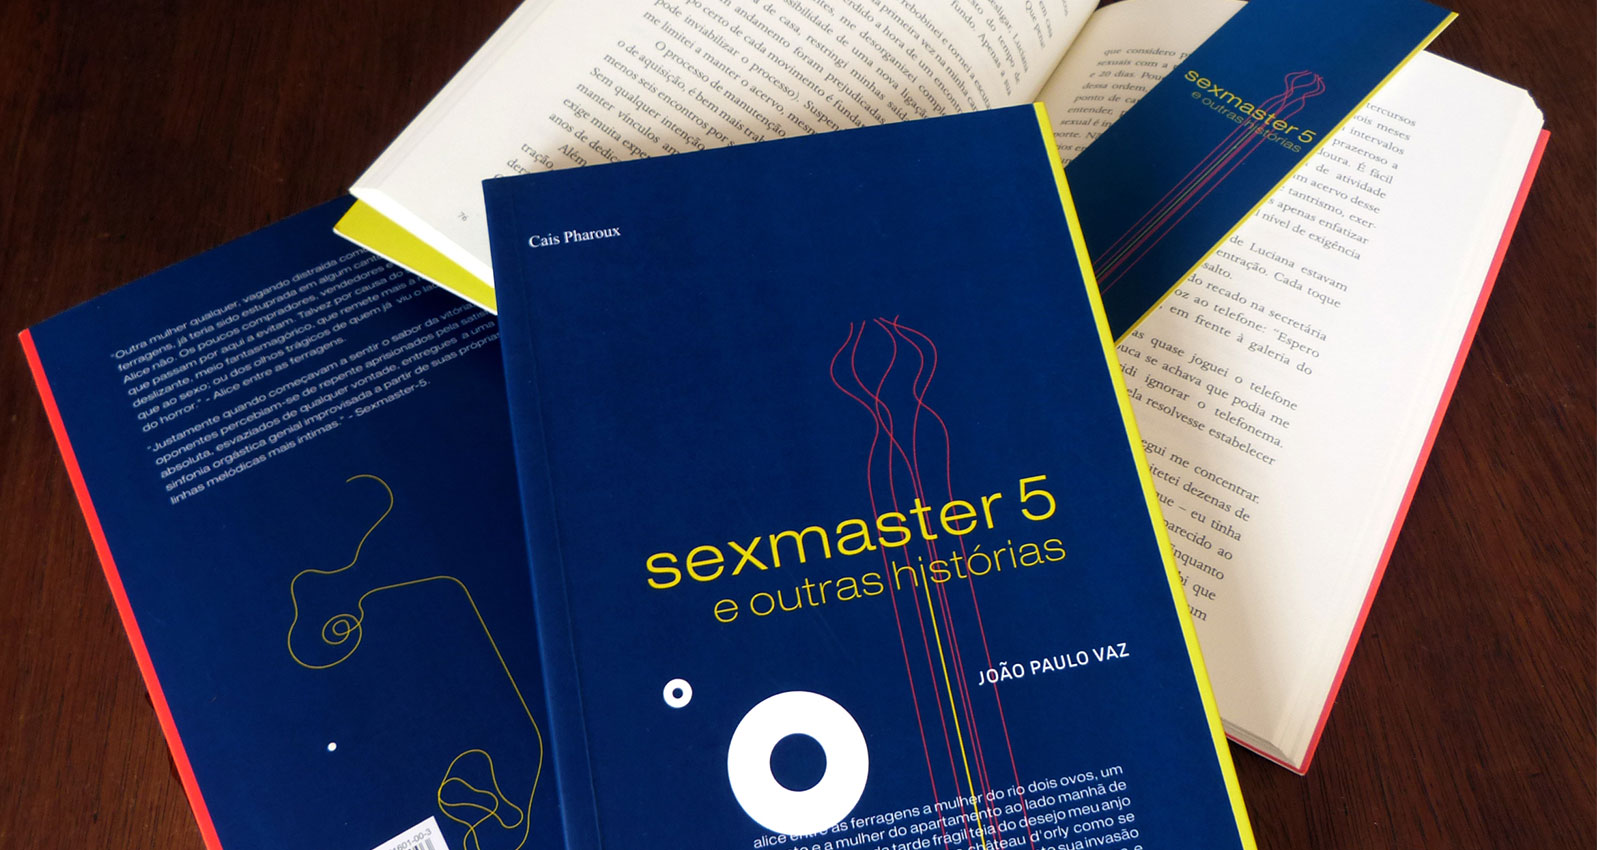 Sexmaster 5